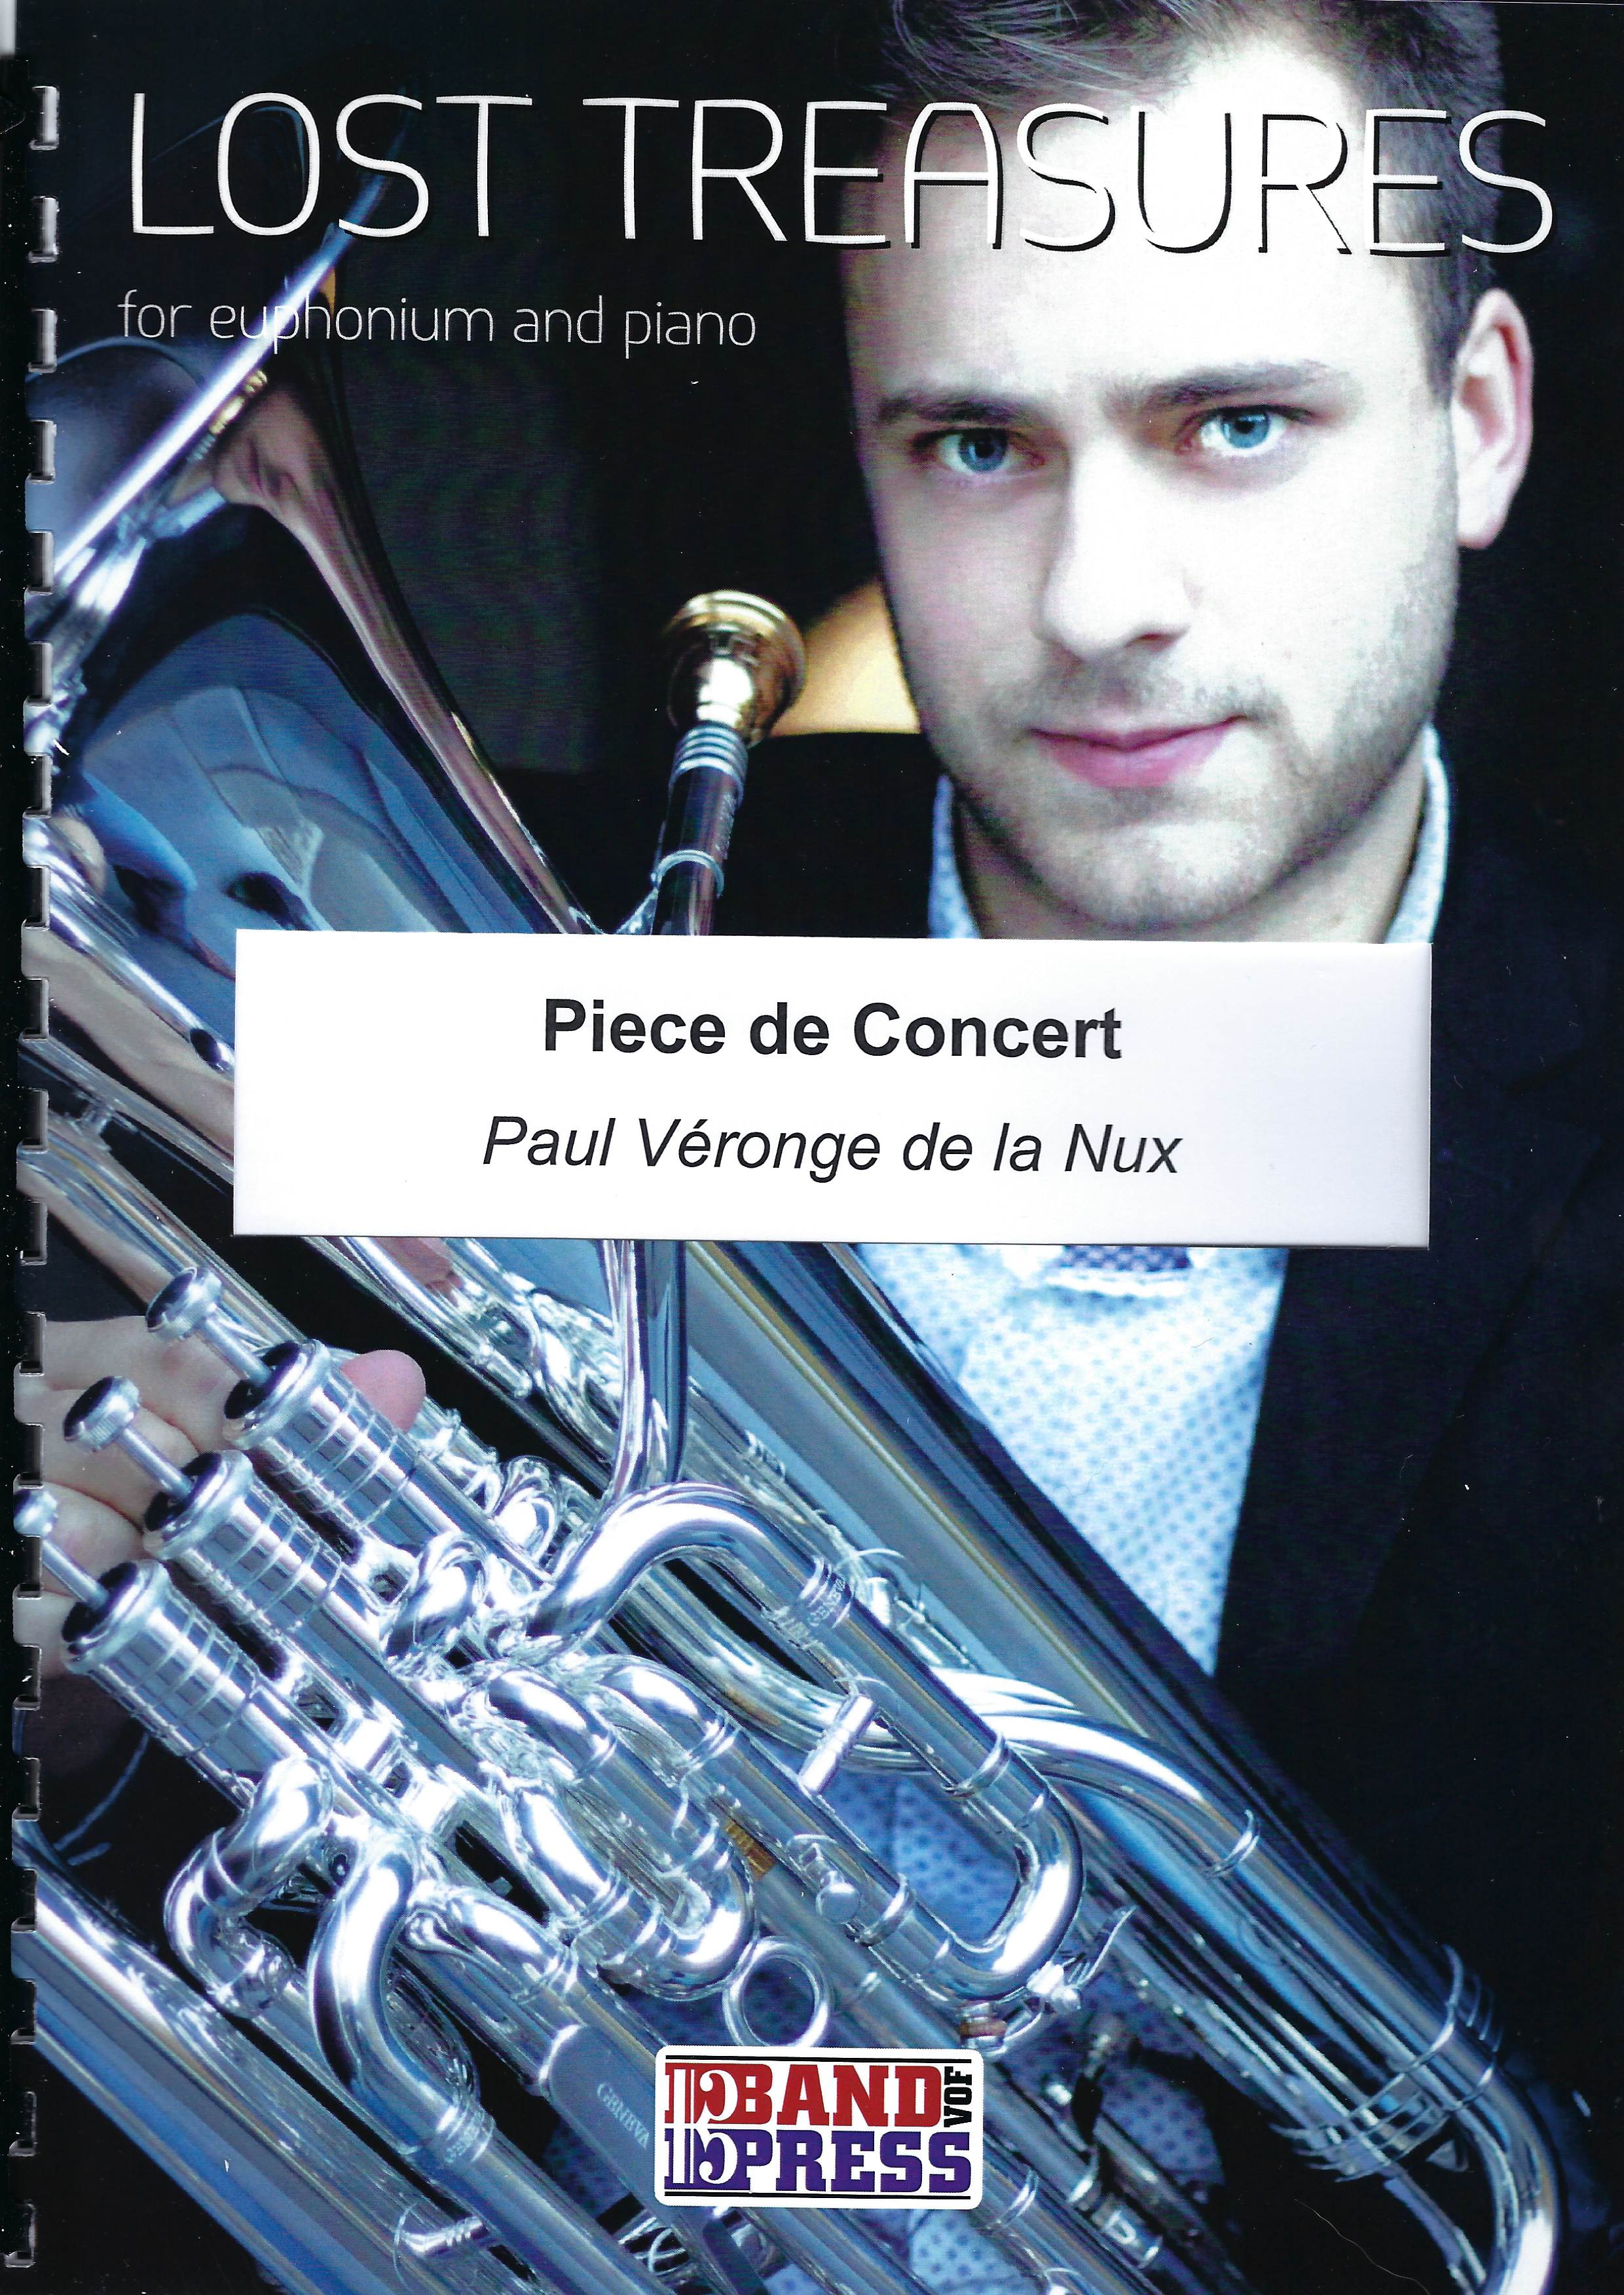 Piece de Concert (Concert Piece) - de la Nux - Euph and Piano (Lost Treasures Series)